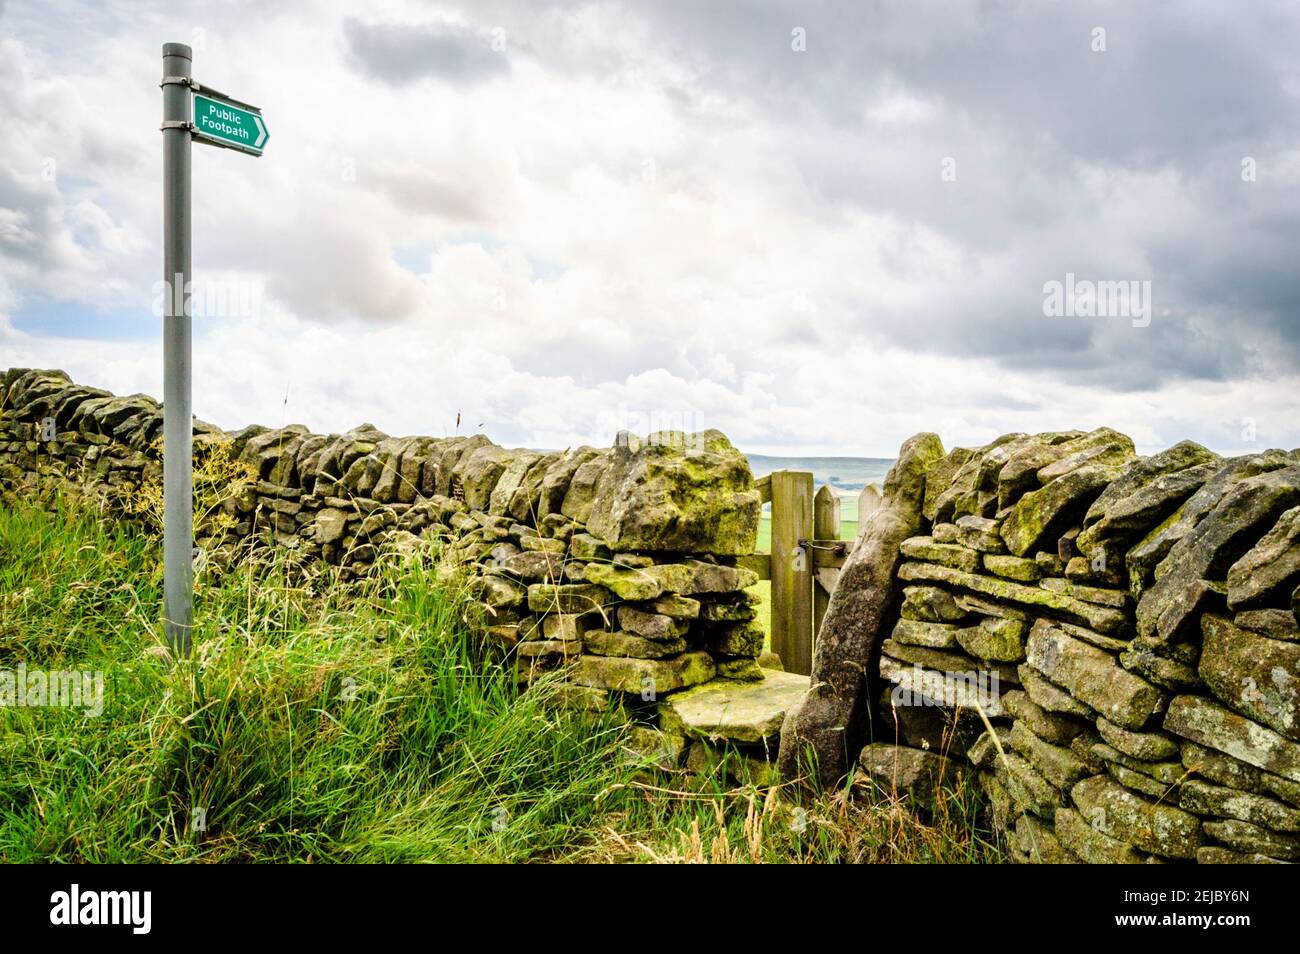 Le panneau de la piste de marche de Walker au mur de pierre sèche et porte sur un chemin dans le Derbyshire, Peak District, Angleterre, Royaume-Uni Banque D'Images